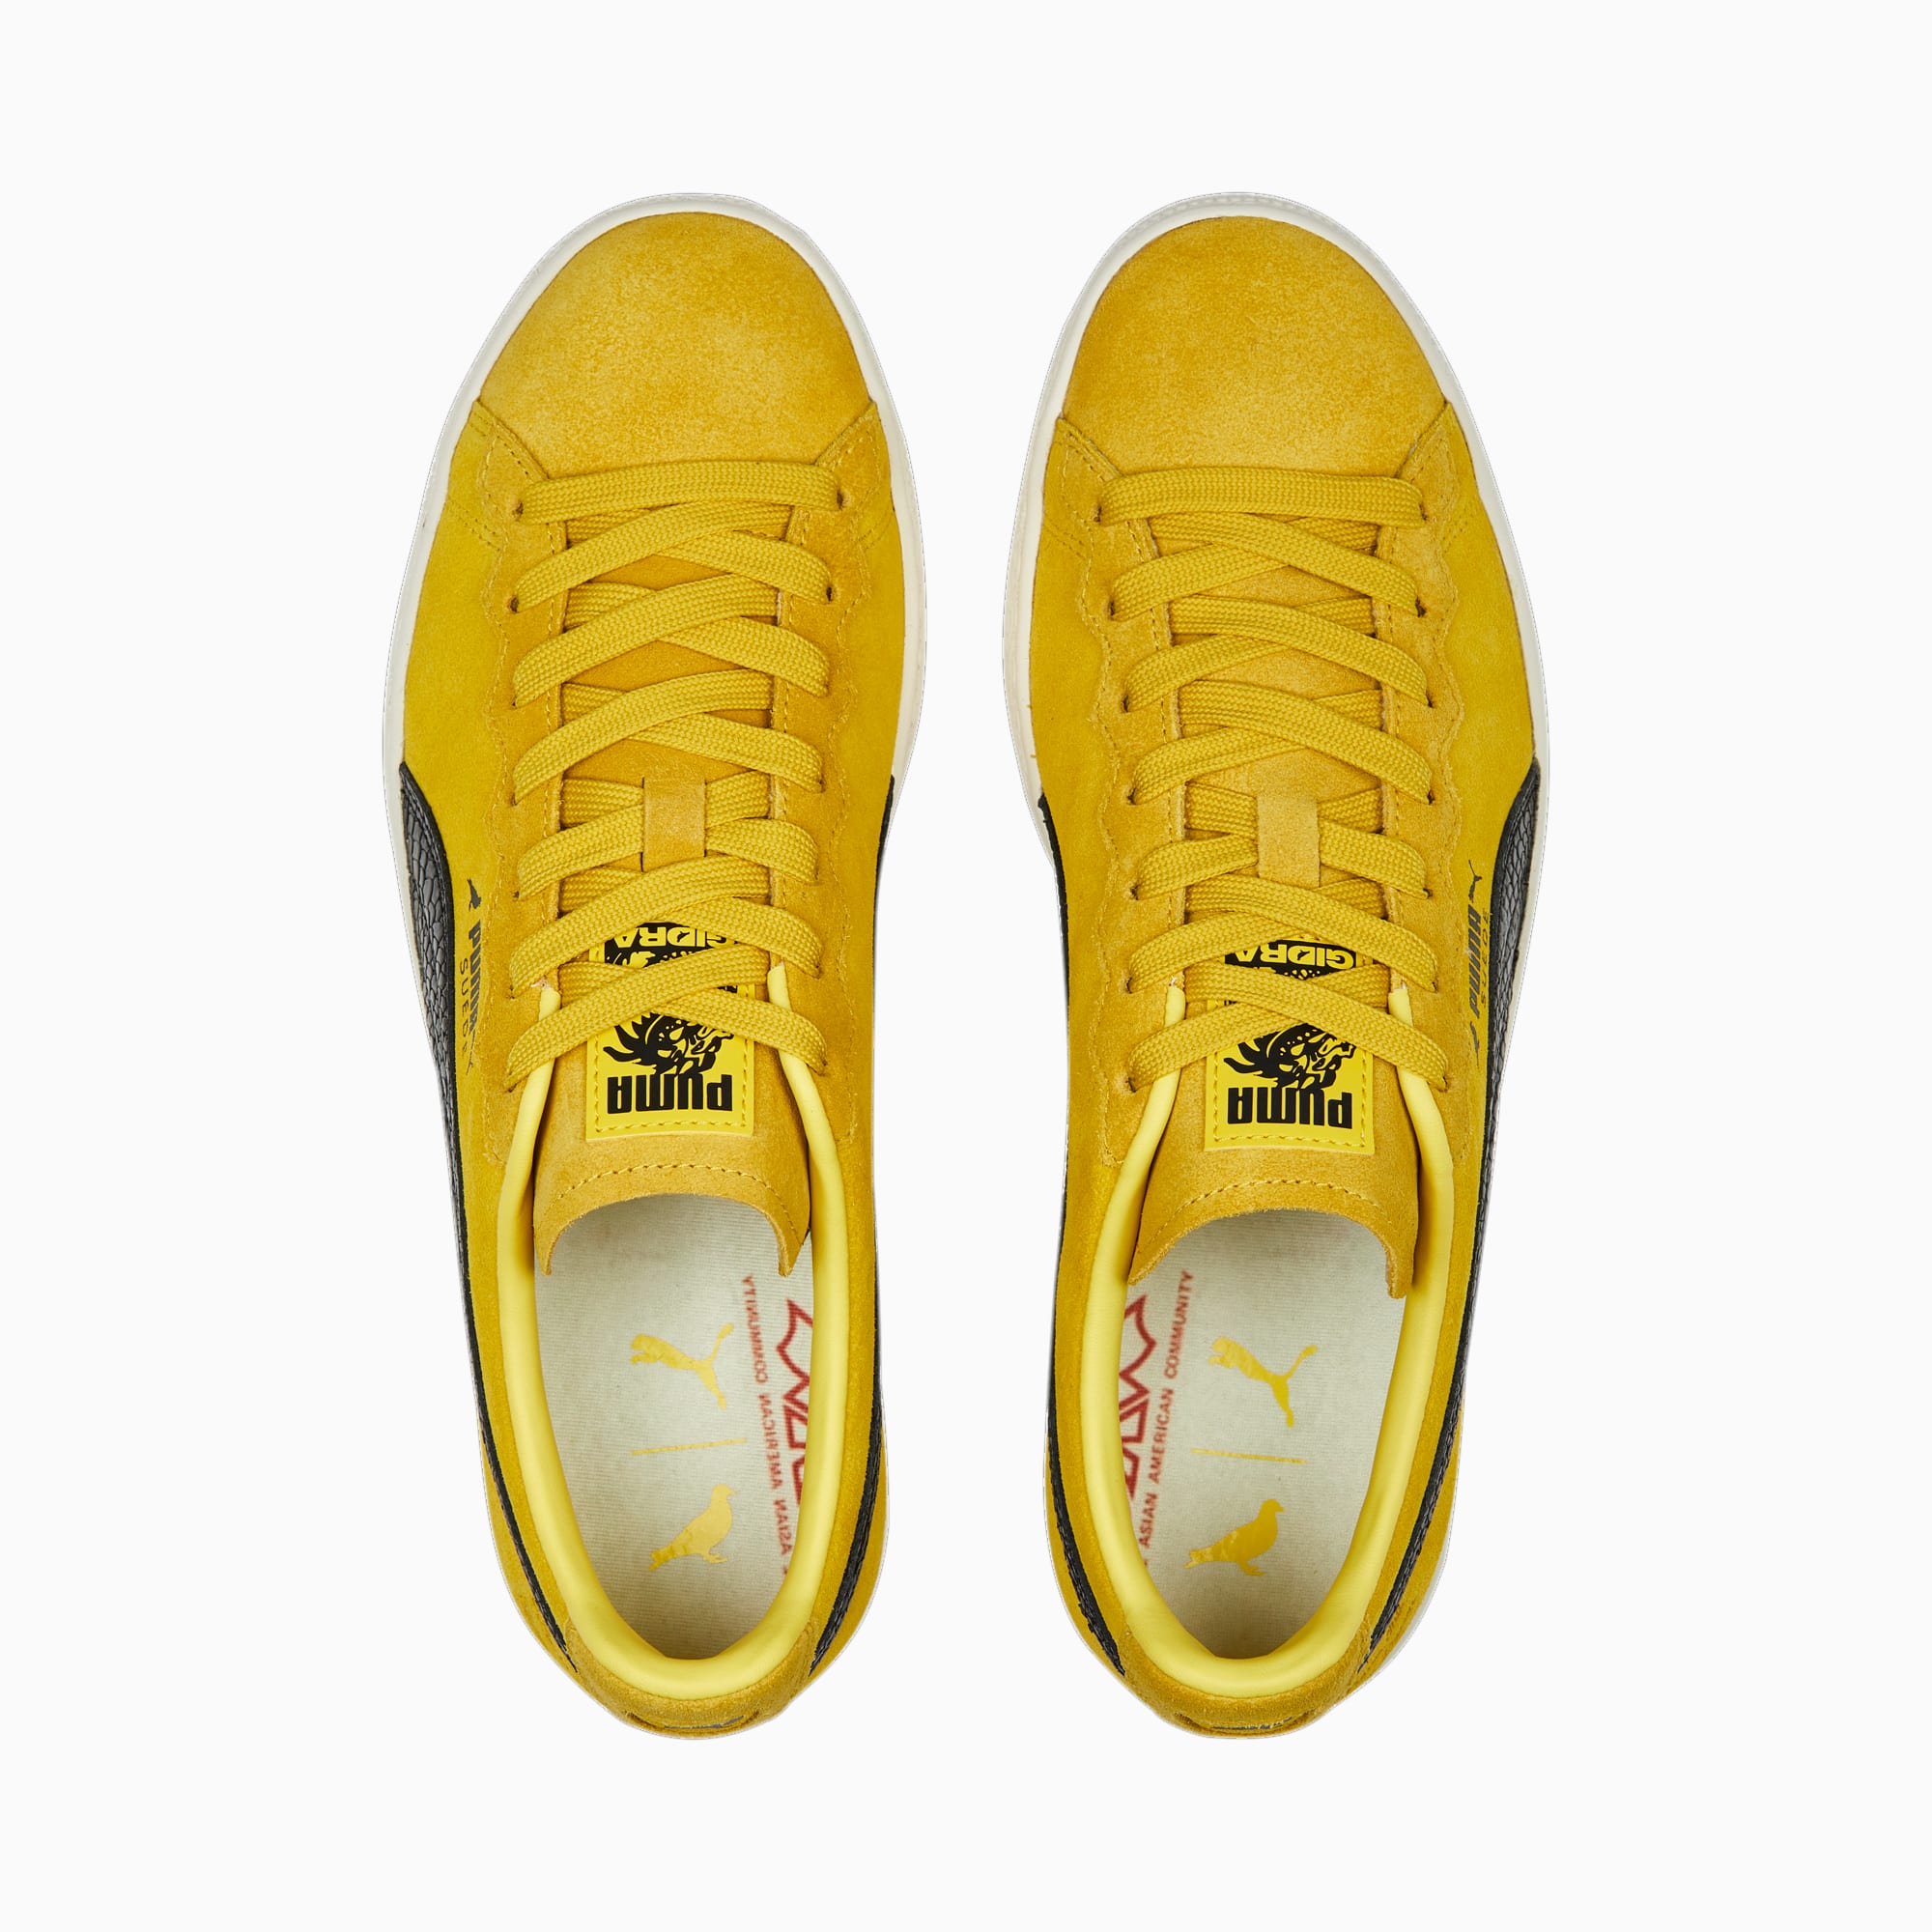 Puma / sneaker Suede Staple in geel